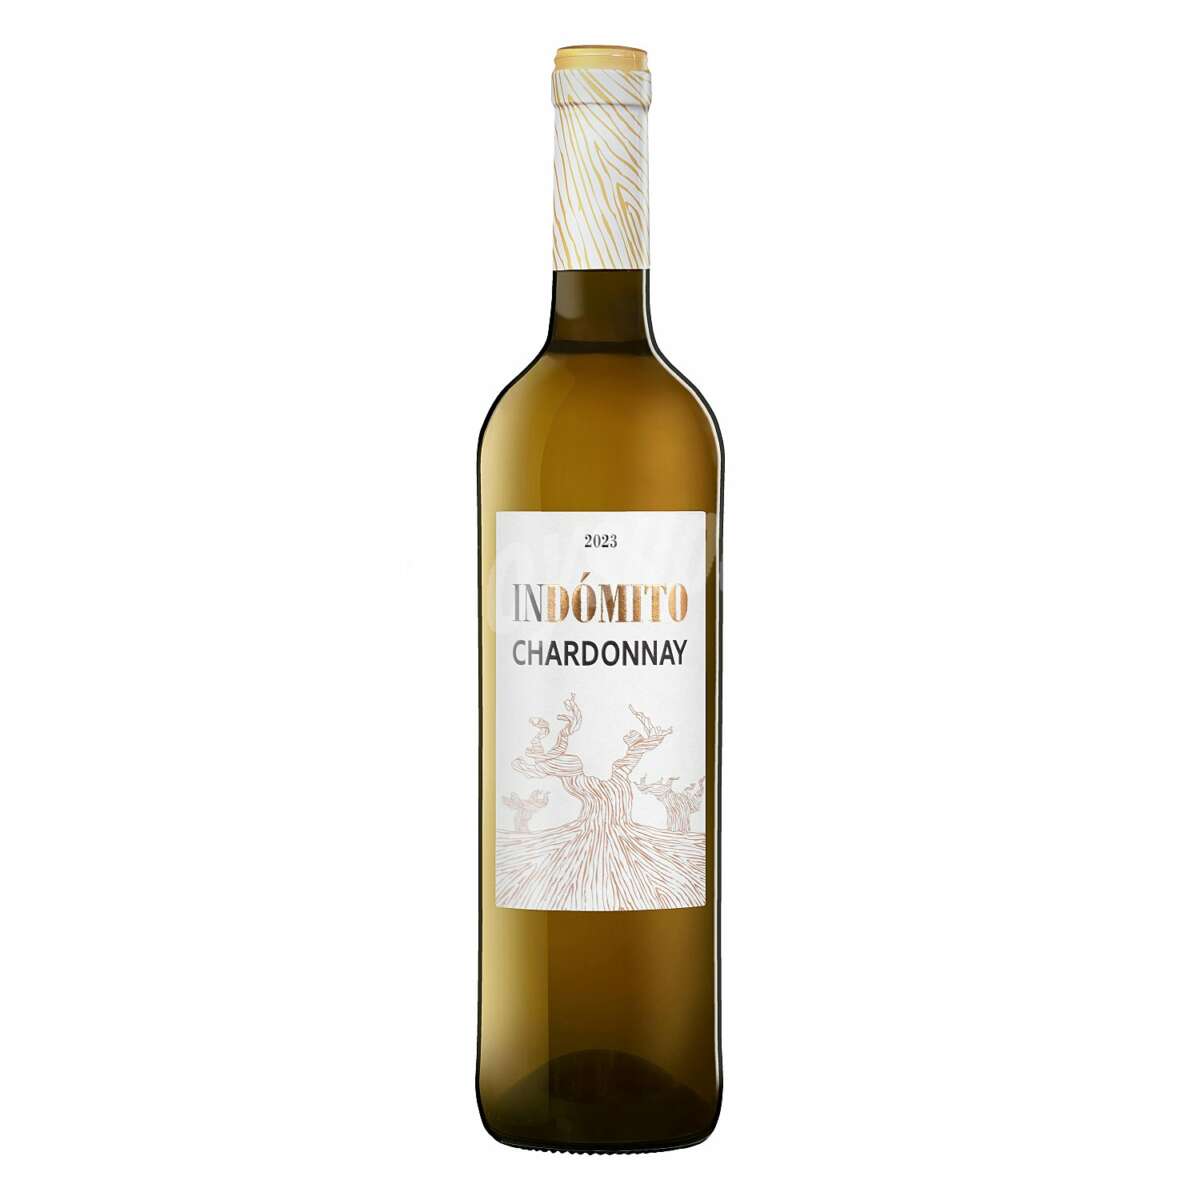 El vino blanco Chardonnay Indómito, disponible en Mercadona.